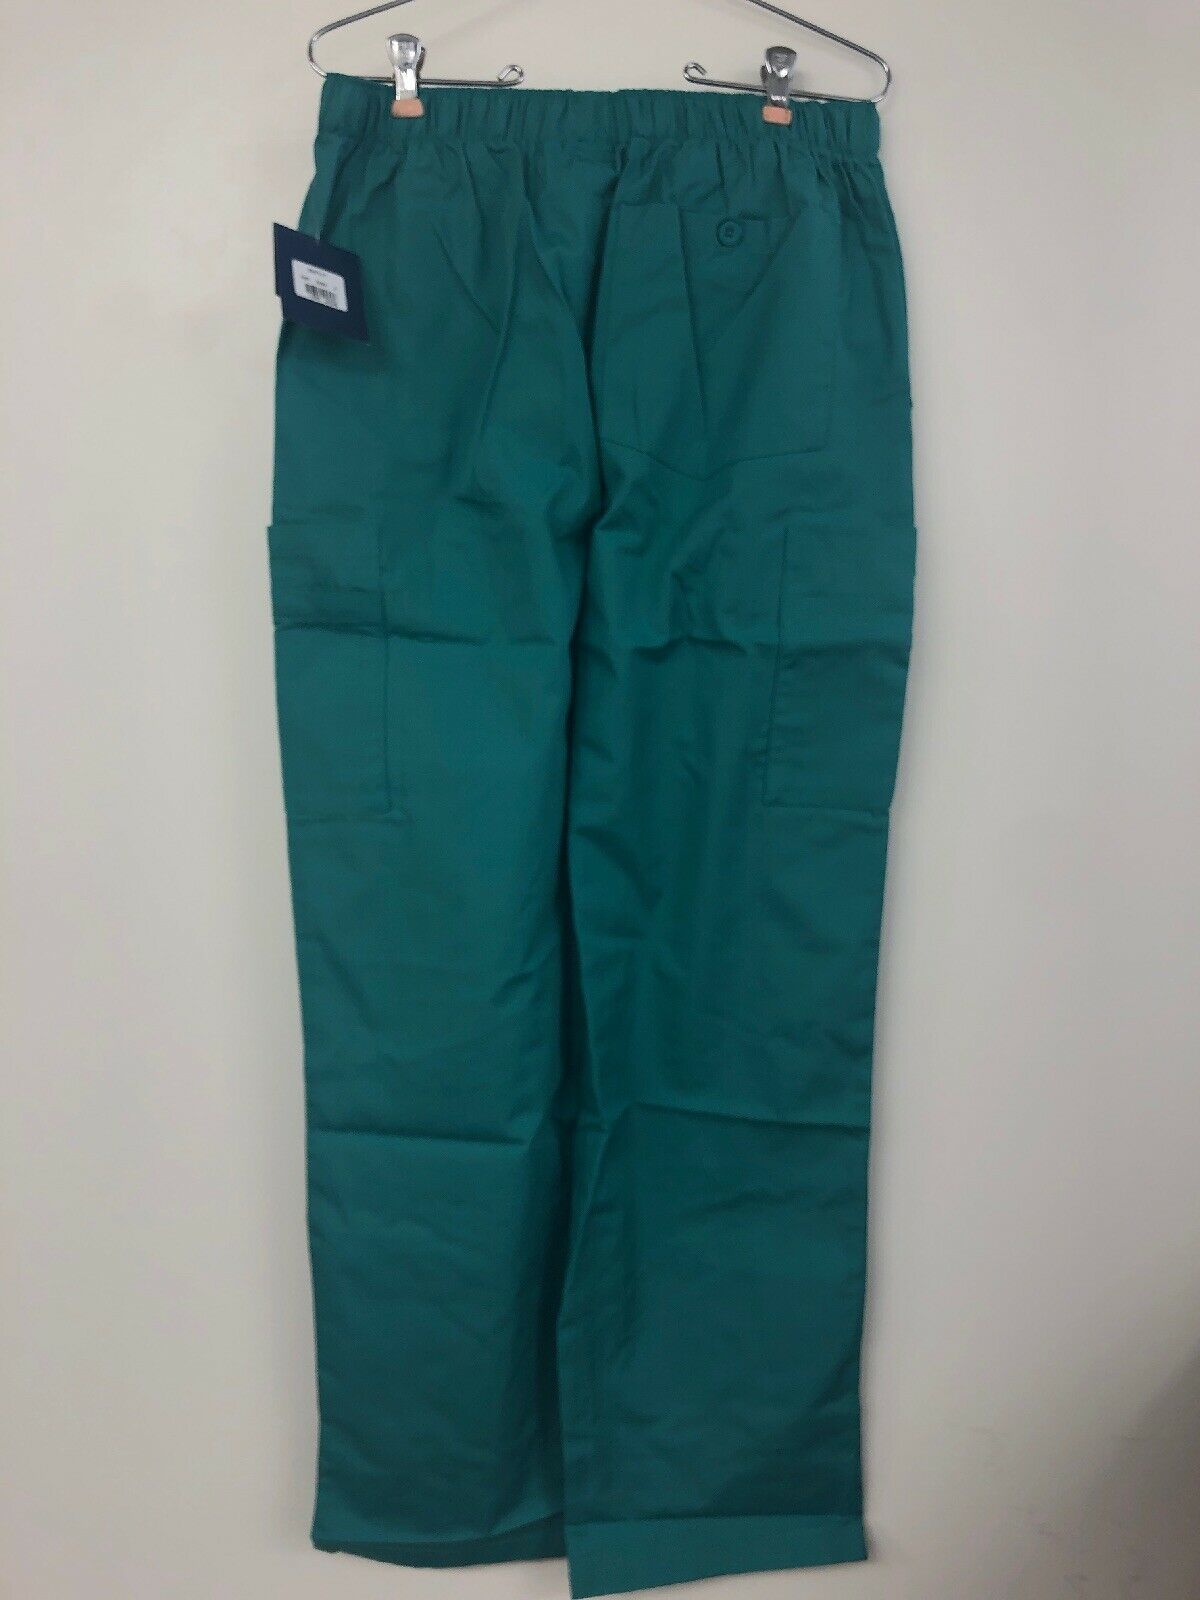 Cherokee Mens Cargo Scrub Pant, Surgical Green , Medium - Bottoms